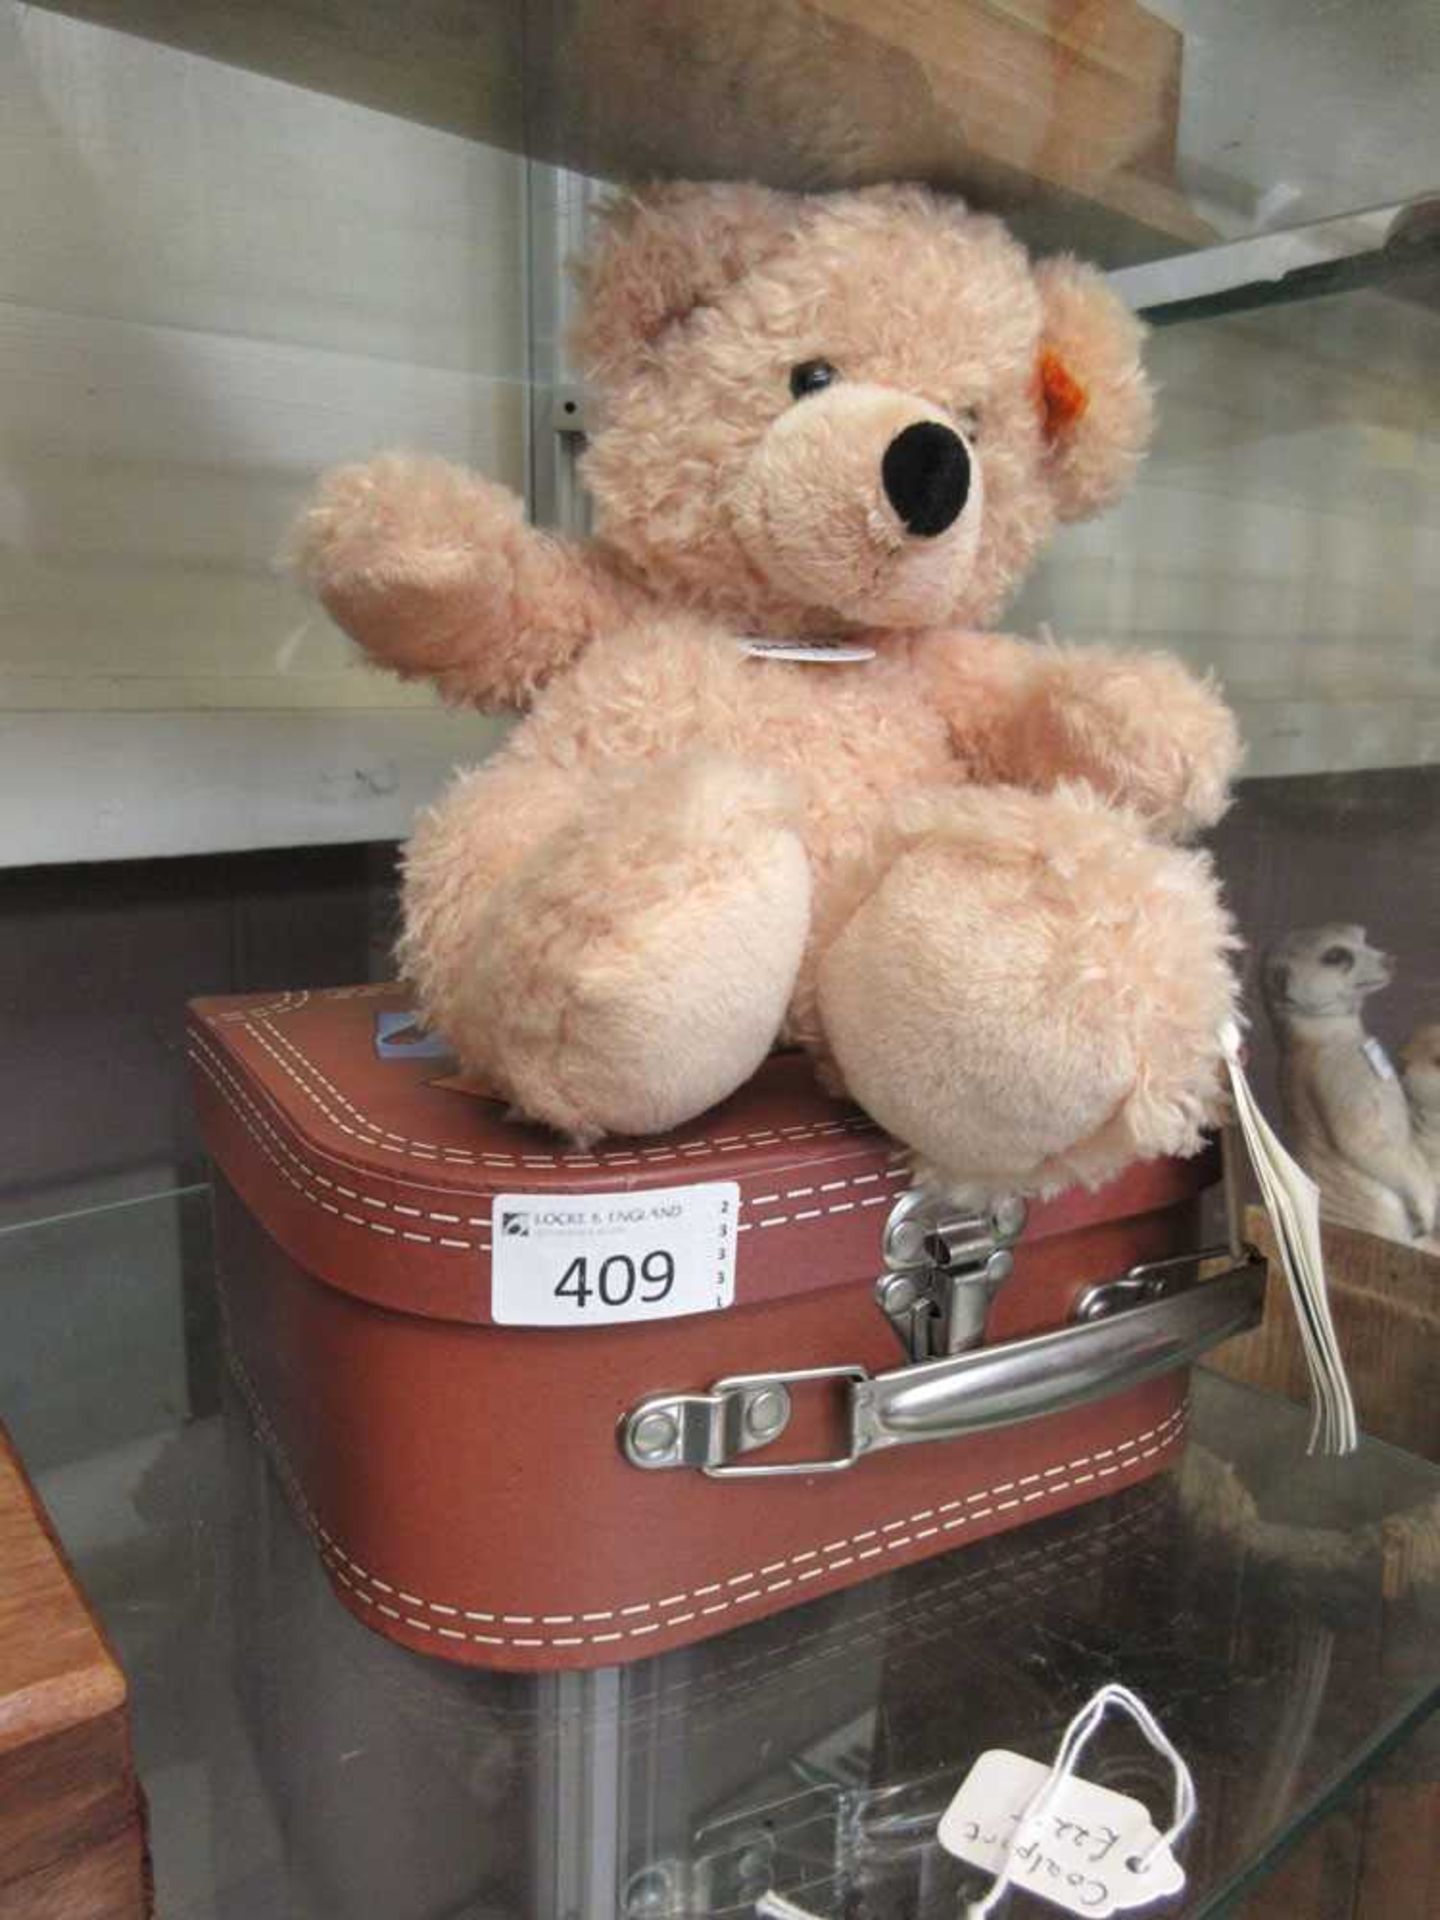 A Steiff teddy bear 'Fynn' in suitcase